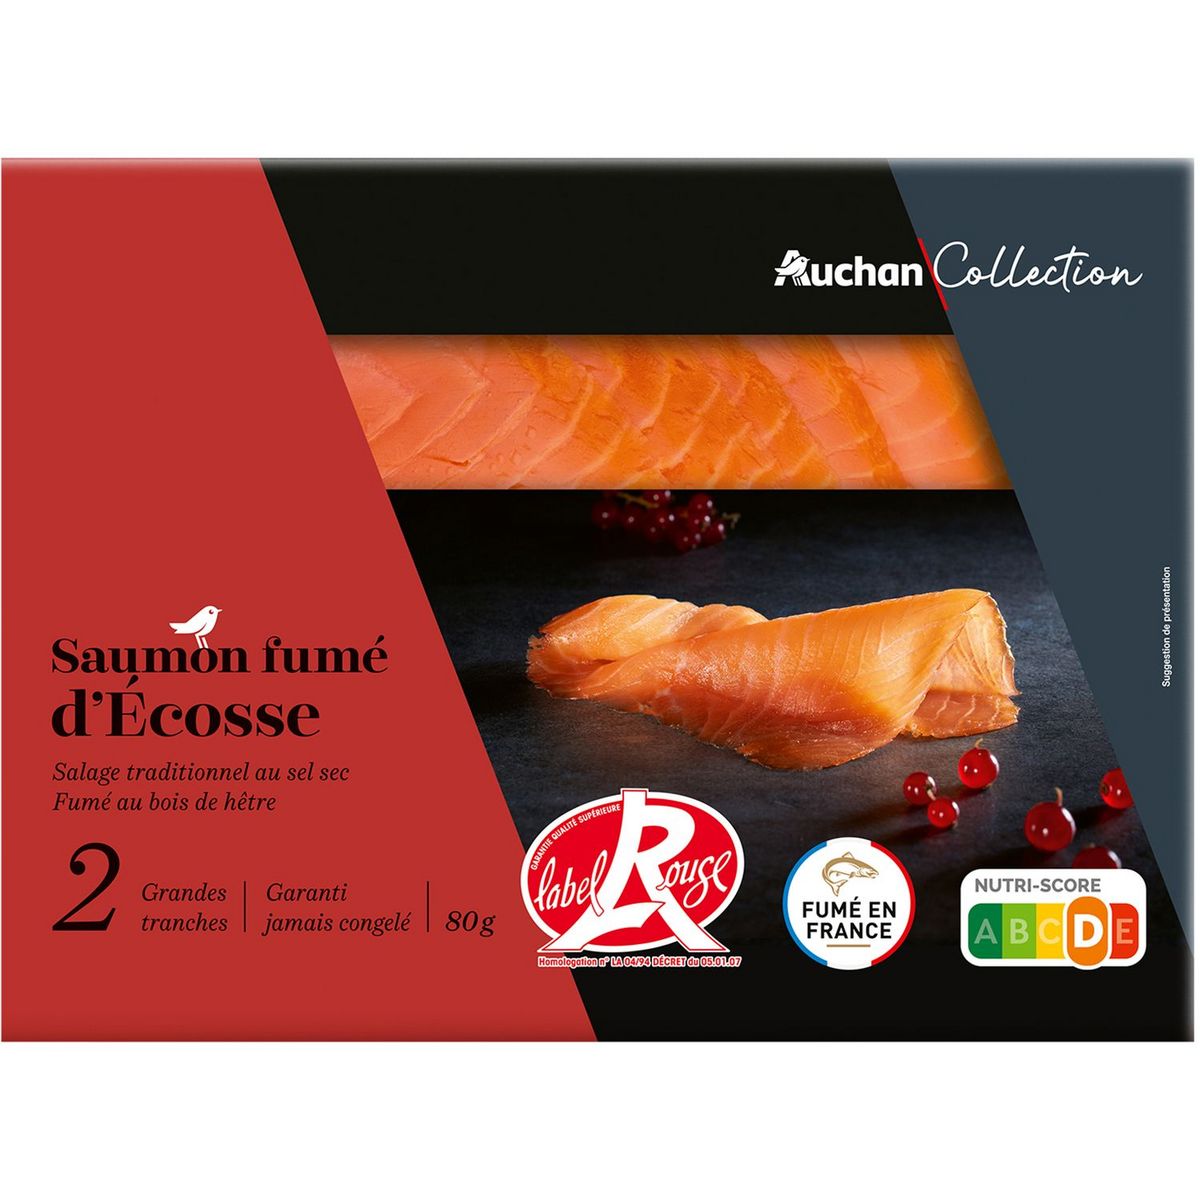 AUCHAN COLLECTION Saumon fumé d'Ecosse label rouge 2 tranches 80g